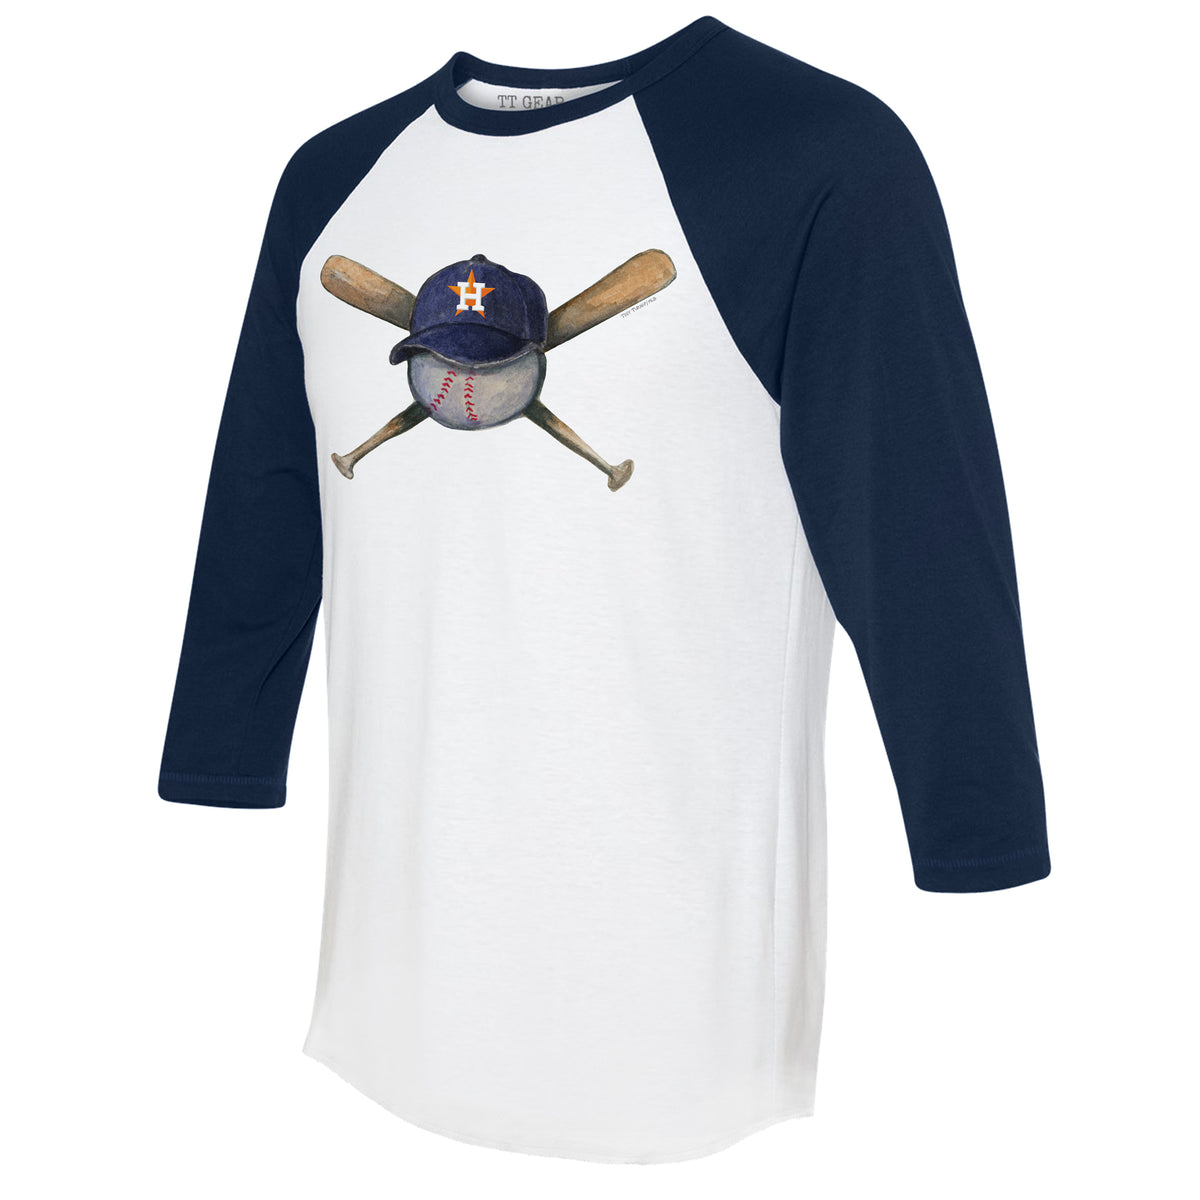 Women's Tiny Turnip White Houston Astros Prism Arrows T-Shirt Size: Small